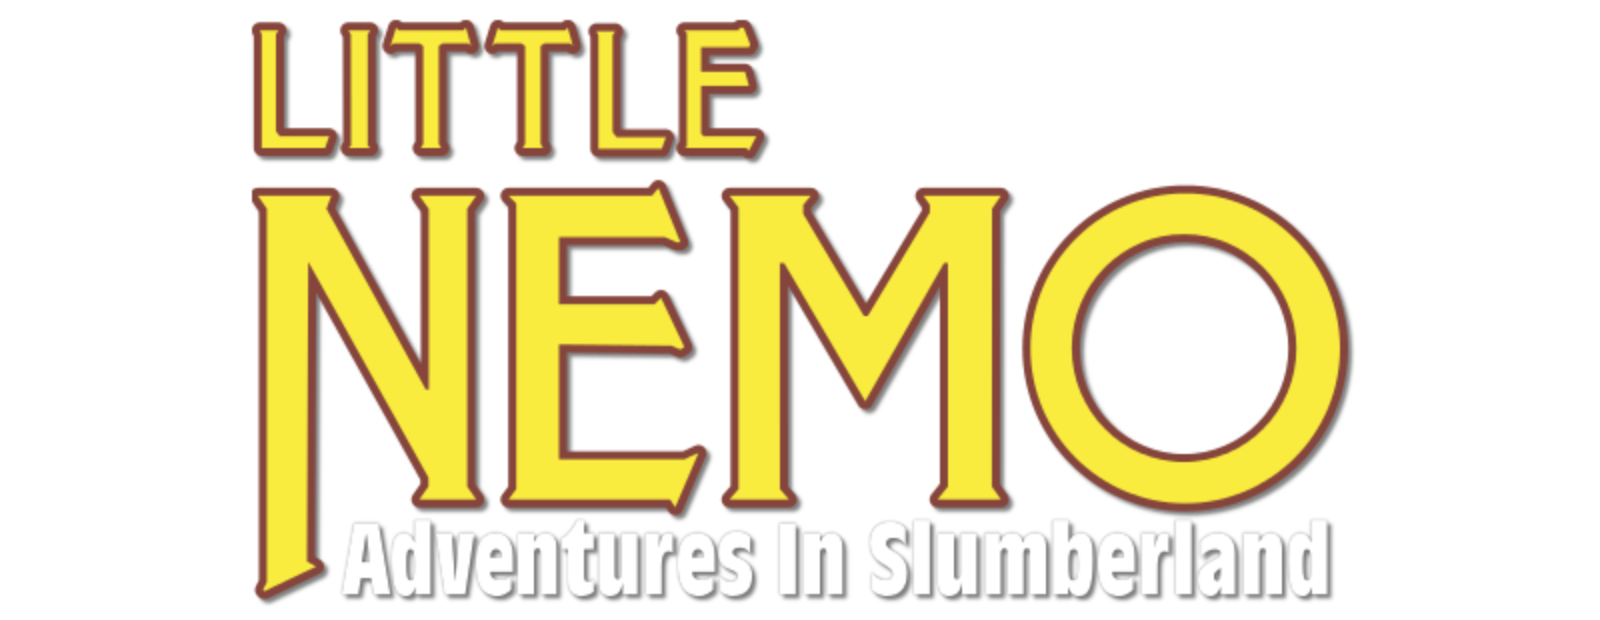 Little Nemo: Adventures in Slumberland (1 DVD Box Set)